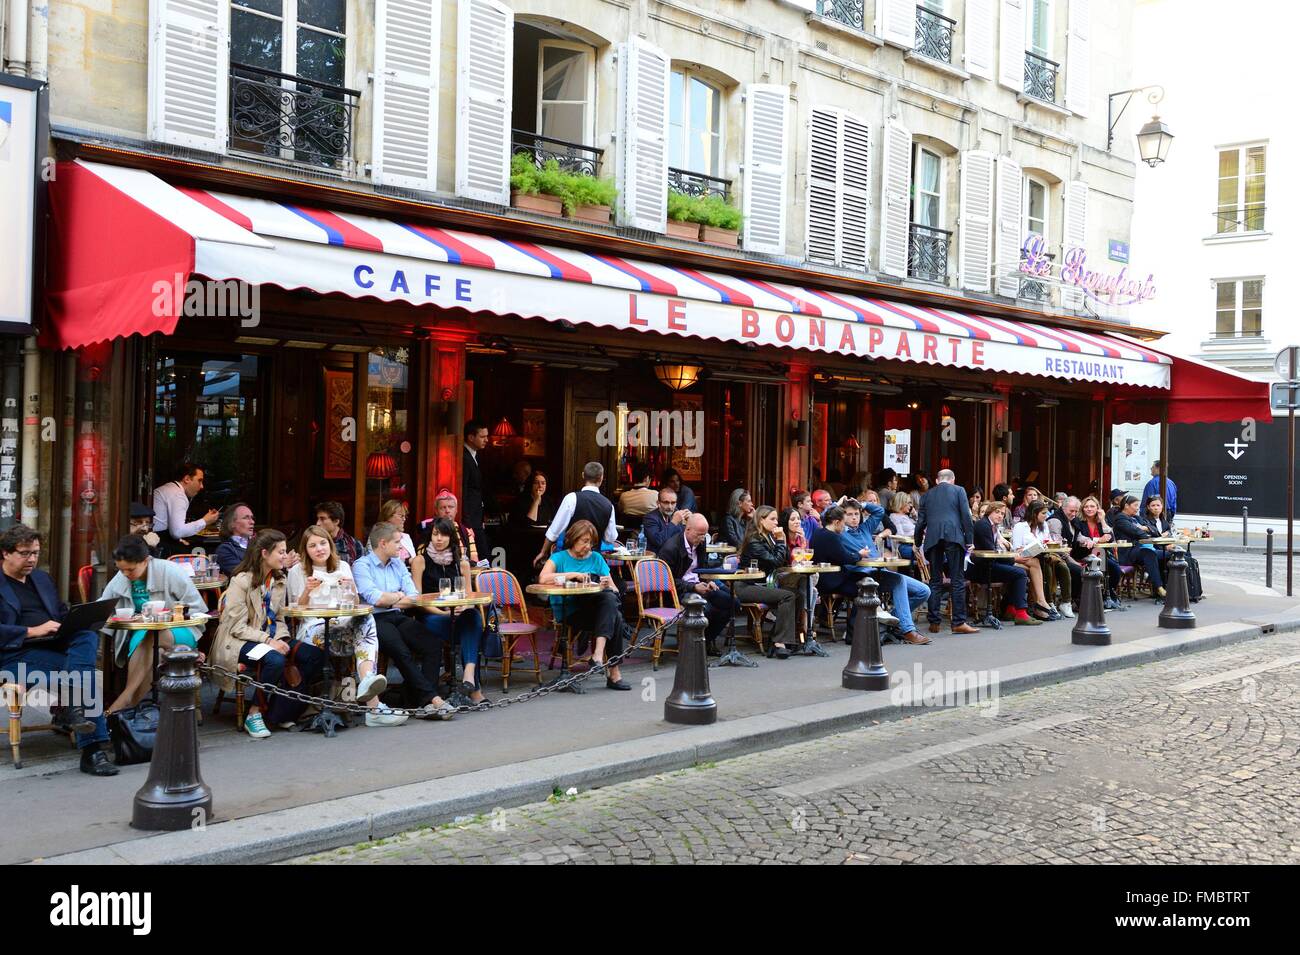 France, Paris, Saint Germain des Pres, Le Bonarparte, café terrasse Banque D'Images